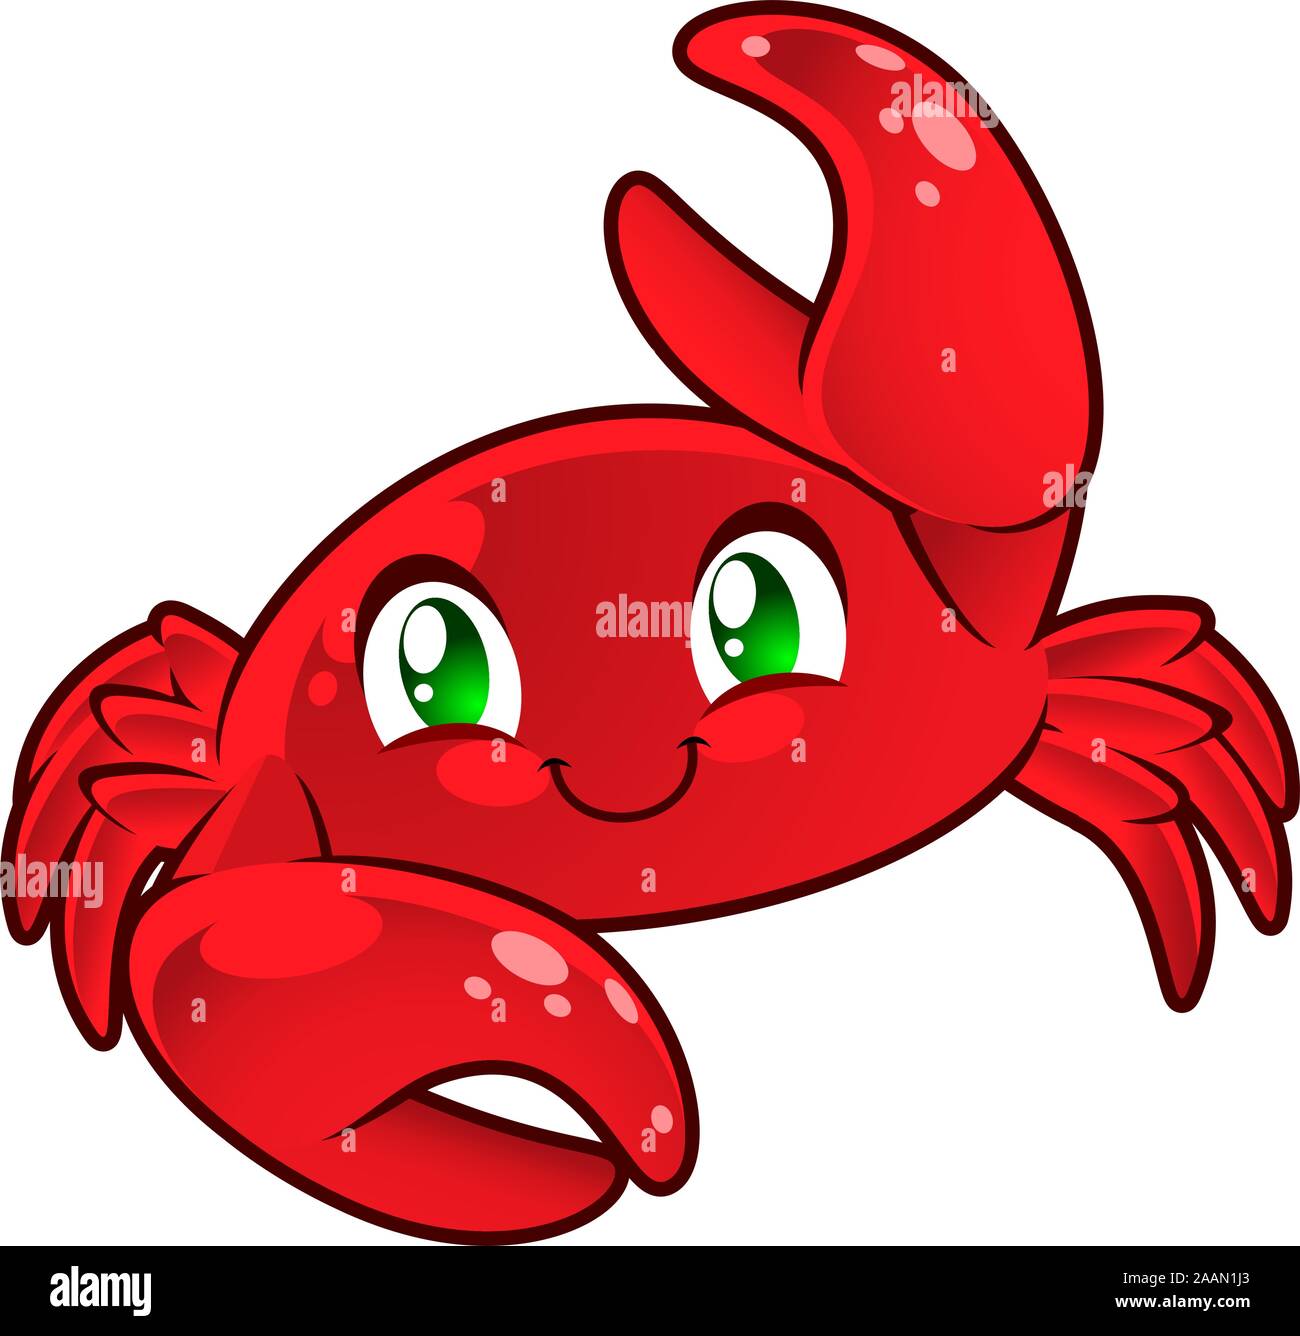 Niedliche Krabbe. Krebs-Zeichen. Rote Krabbe lächelnd heben Hand-Vektor-Illustration. Stock Vektor